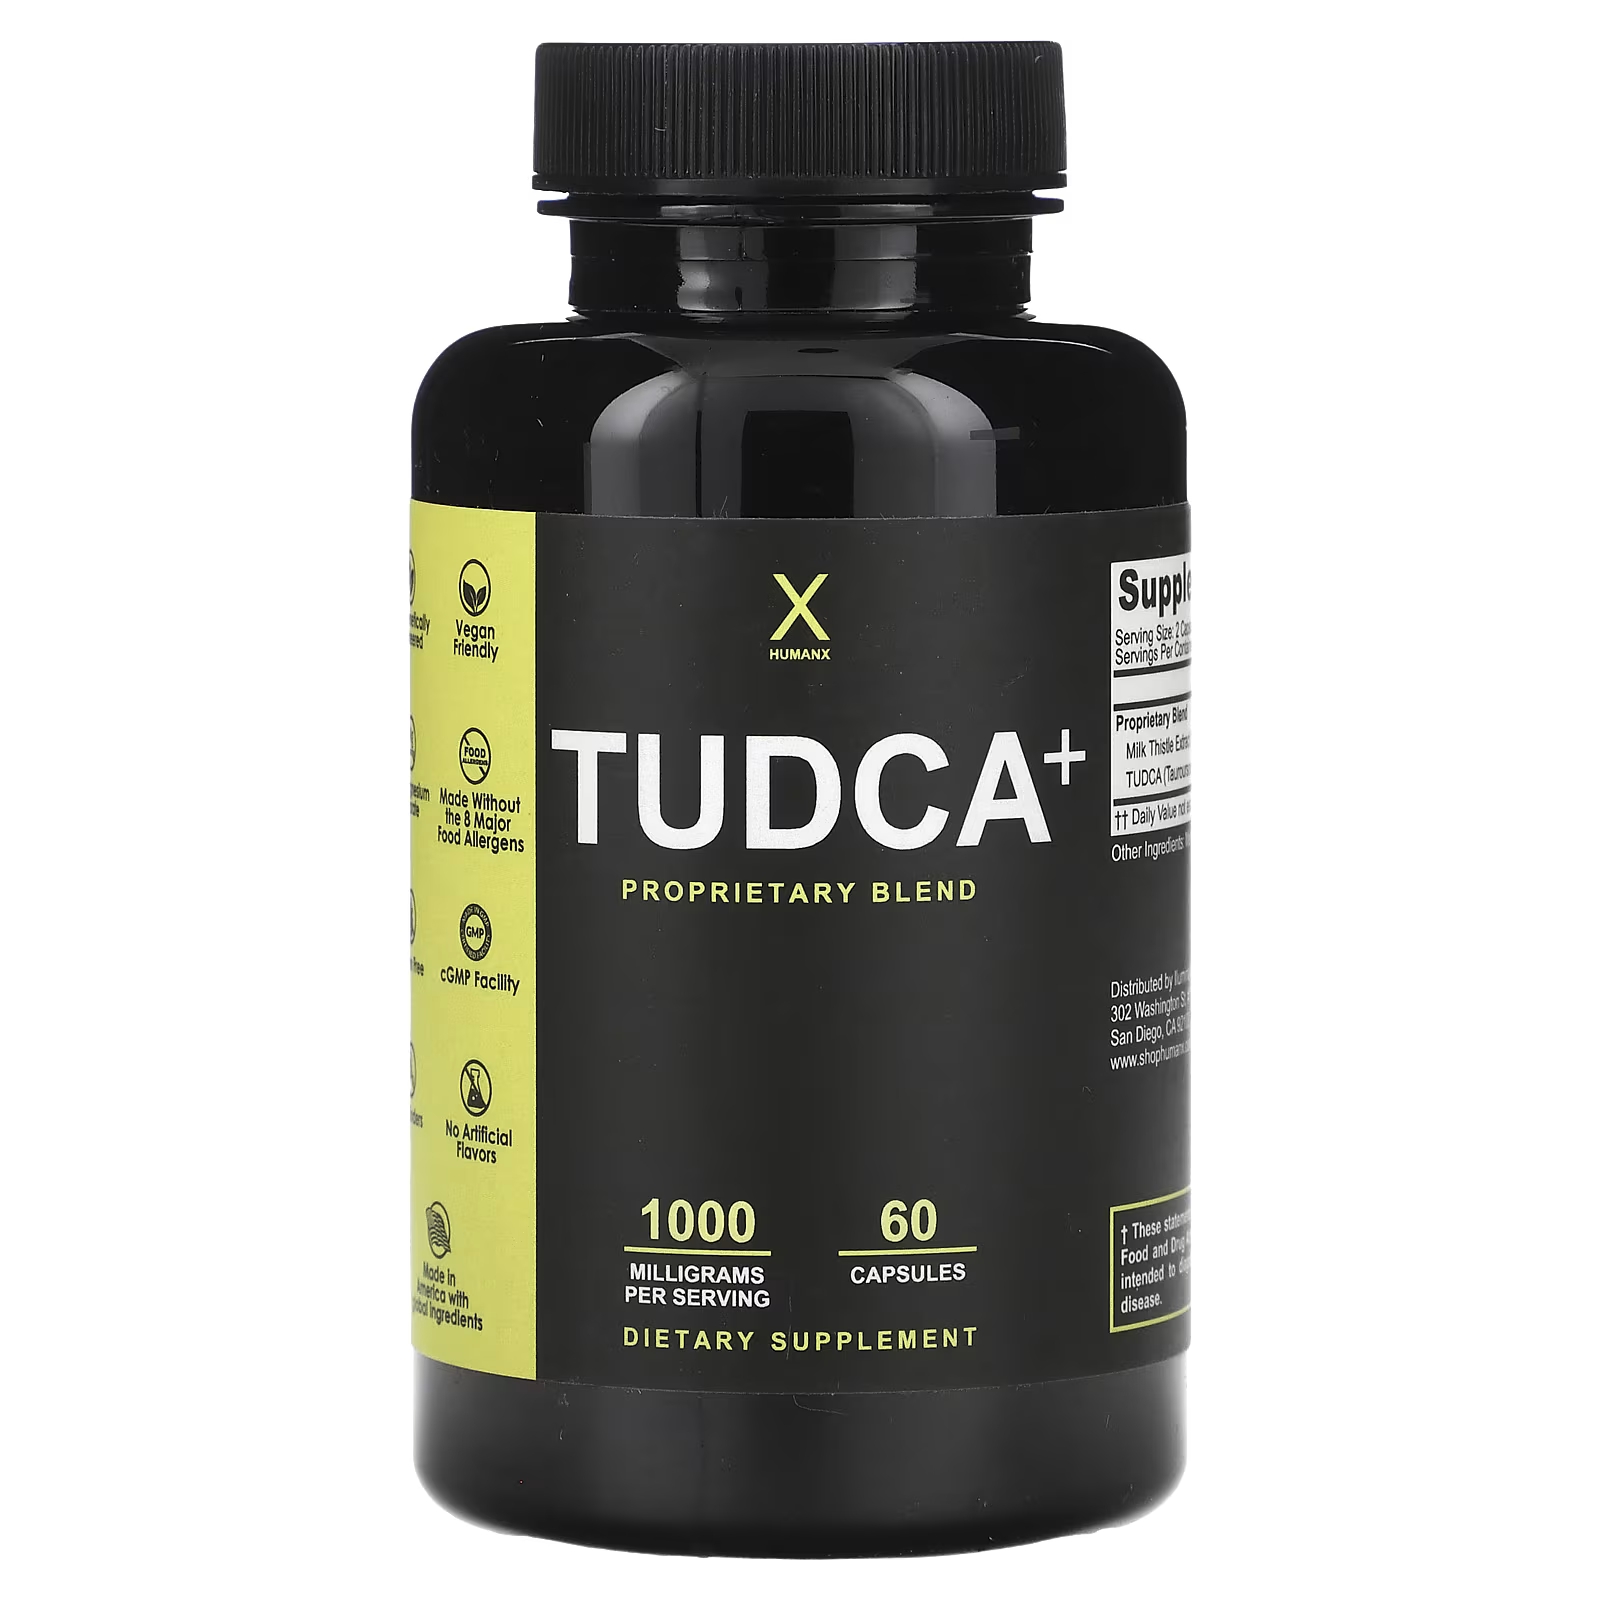 Пищевая добавка Humanx Tudca+ для печени, 60 капсул allmax nutrition tudca защитное средство для печени 60 капсул